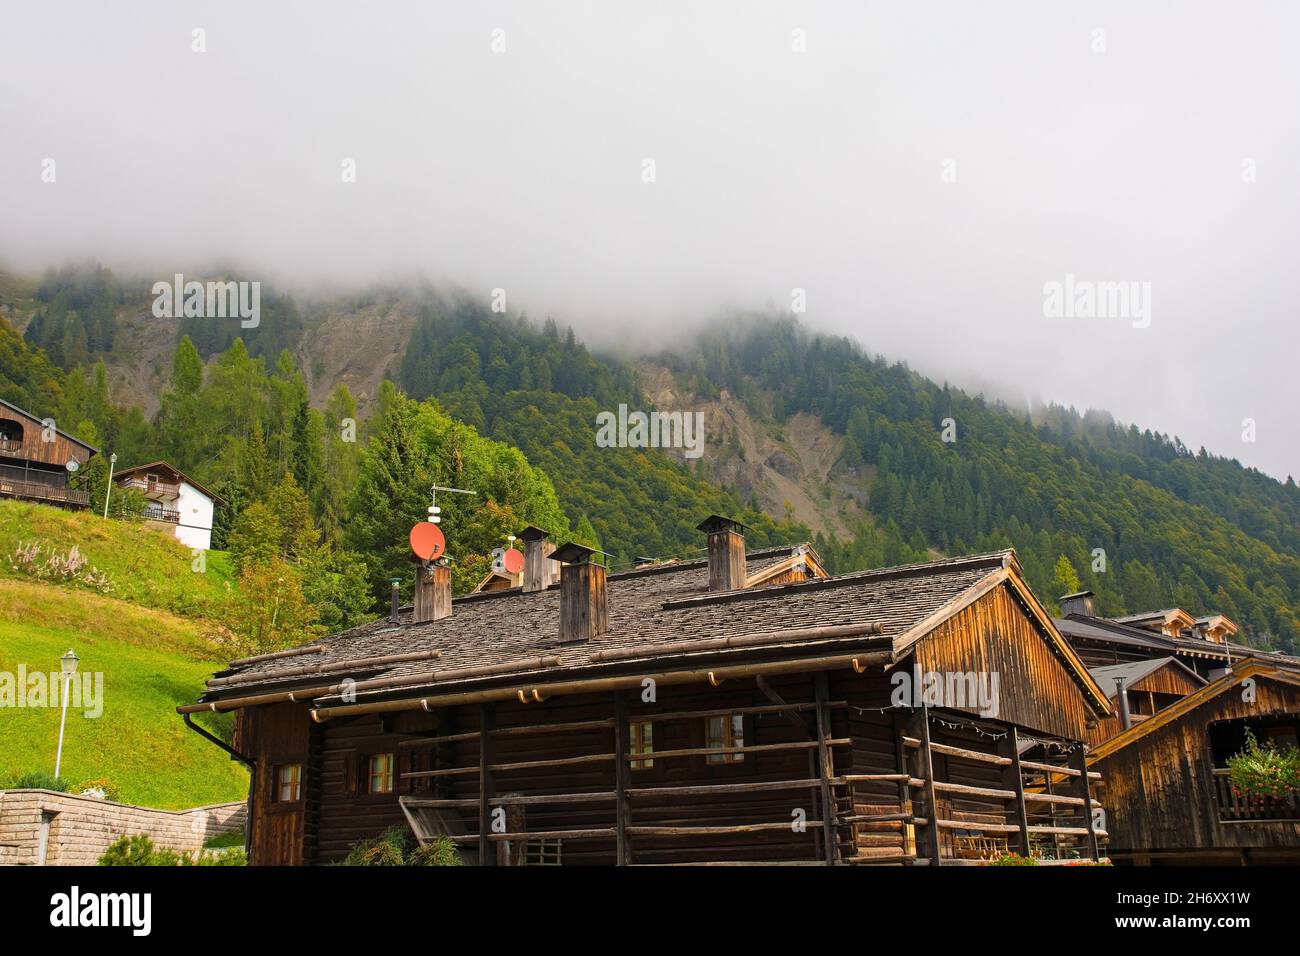 Traditional wooden buildings in the Alpine village of Sauris di Sopra, Udine Province, Friuli-Venezia Giulia, north east Italy Stock Photo